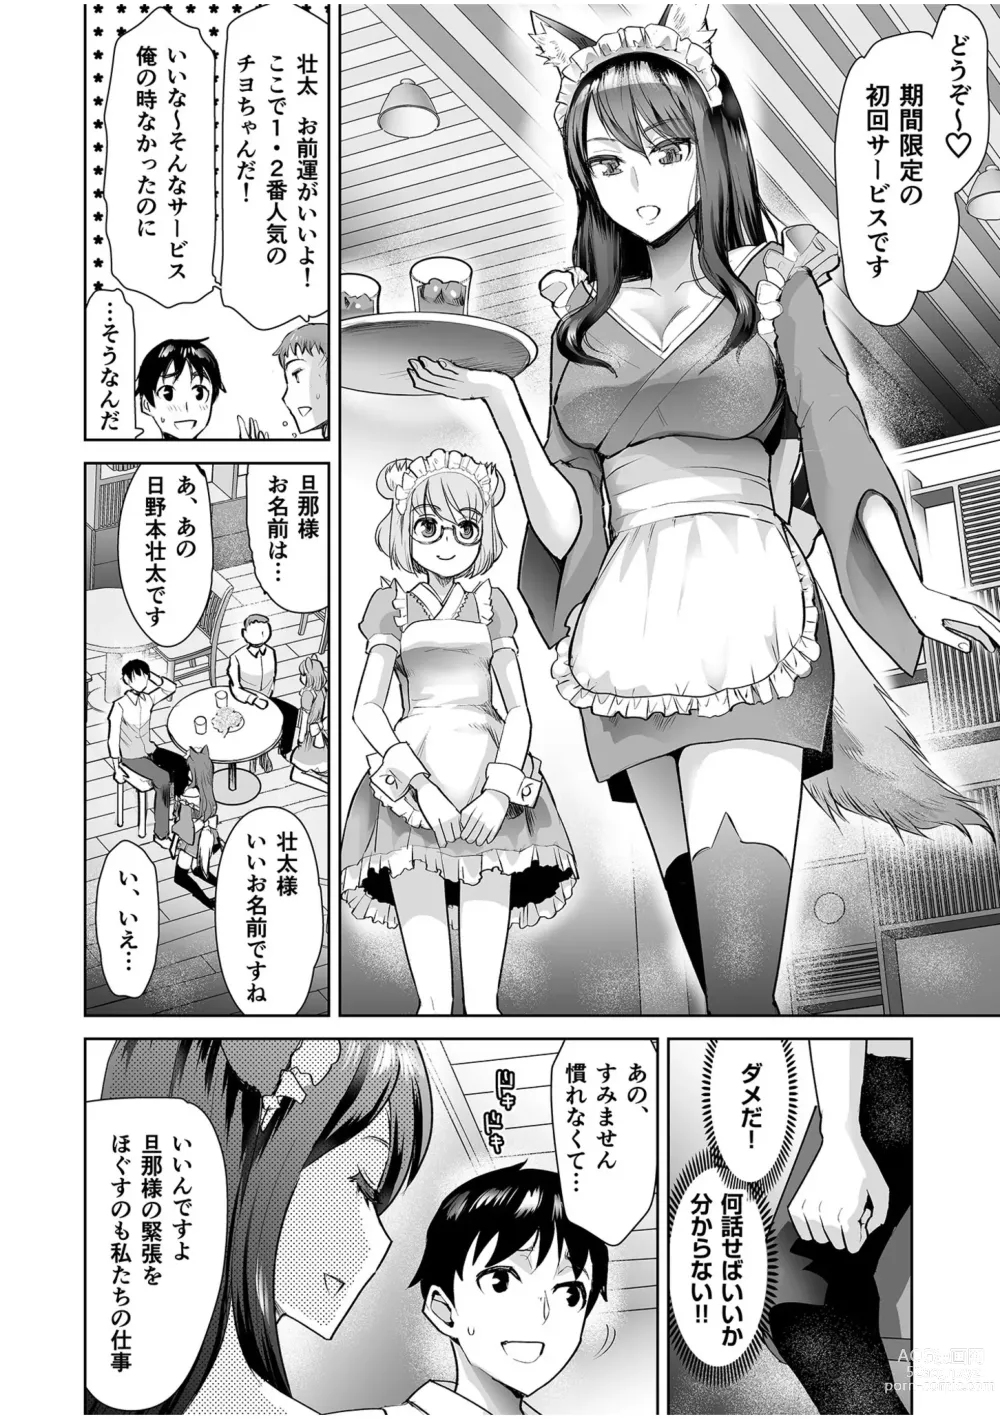 Page 6 of manga Erotic Maid Mimi Japan